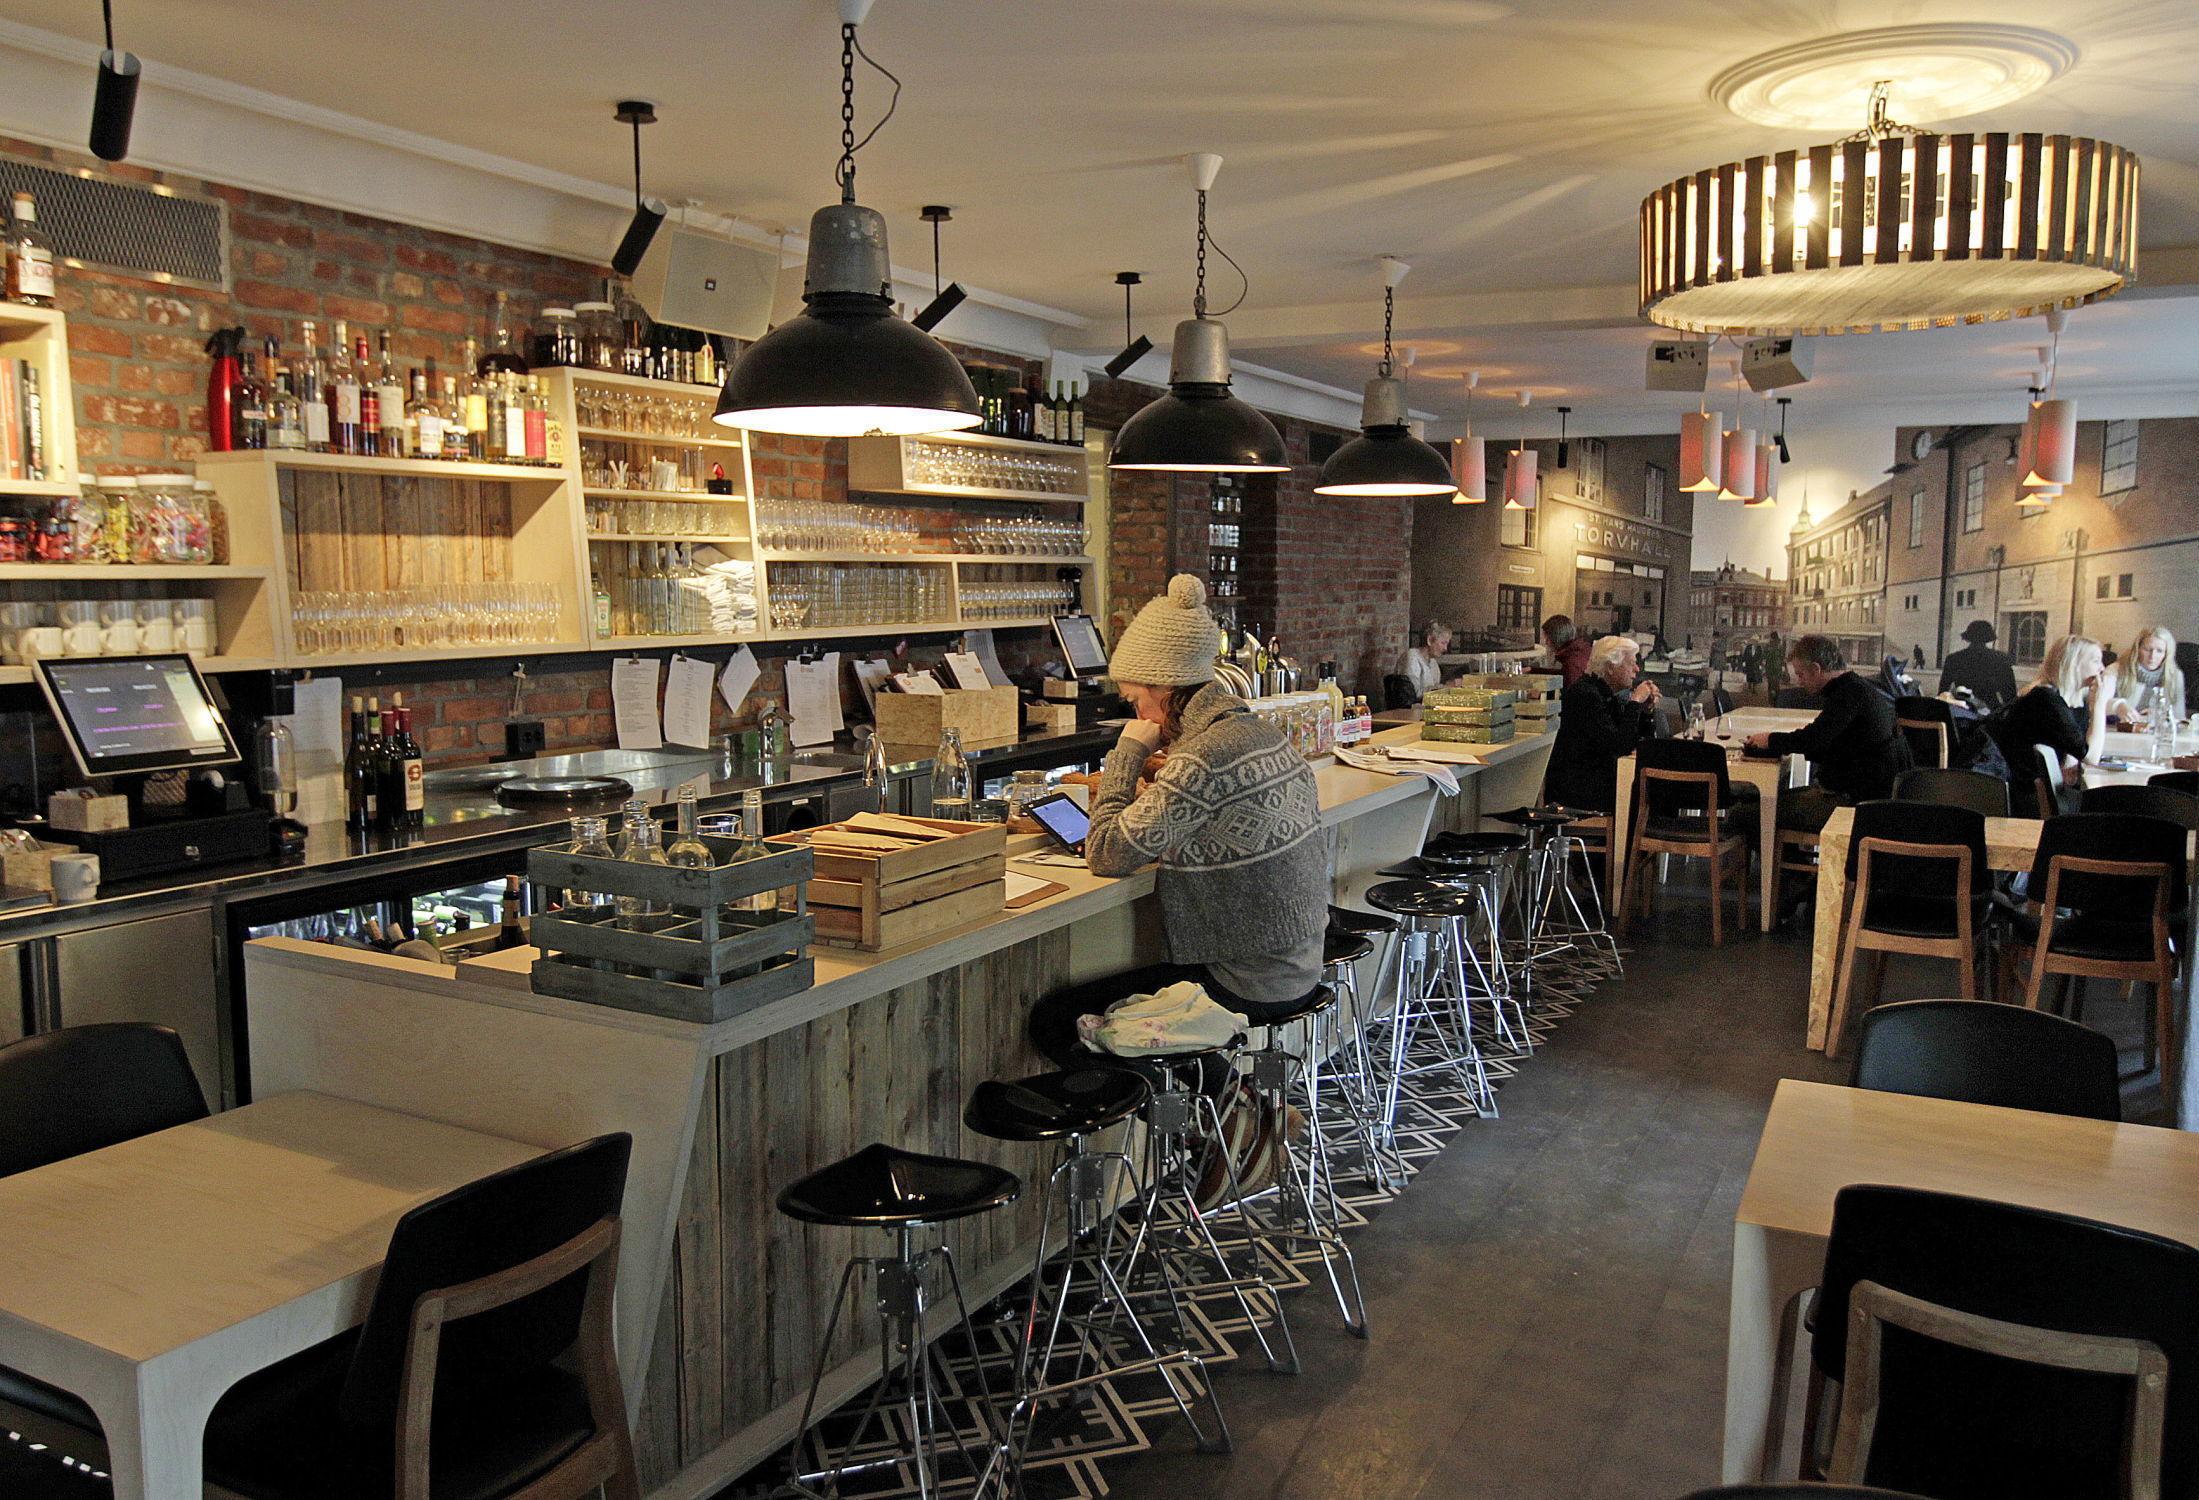 KONGEN PÅ HAUGEN: Restauranten Smalhans på St. Hanshaugen i Oslo er kommet for å bli, ifølge VGs anmelder. Foto: Trond Solberg/VG